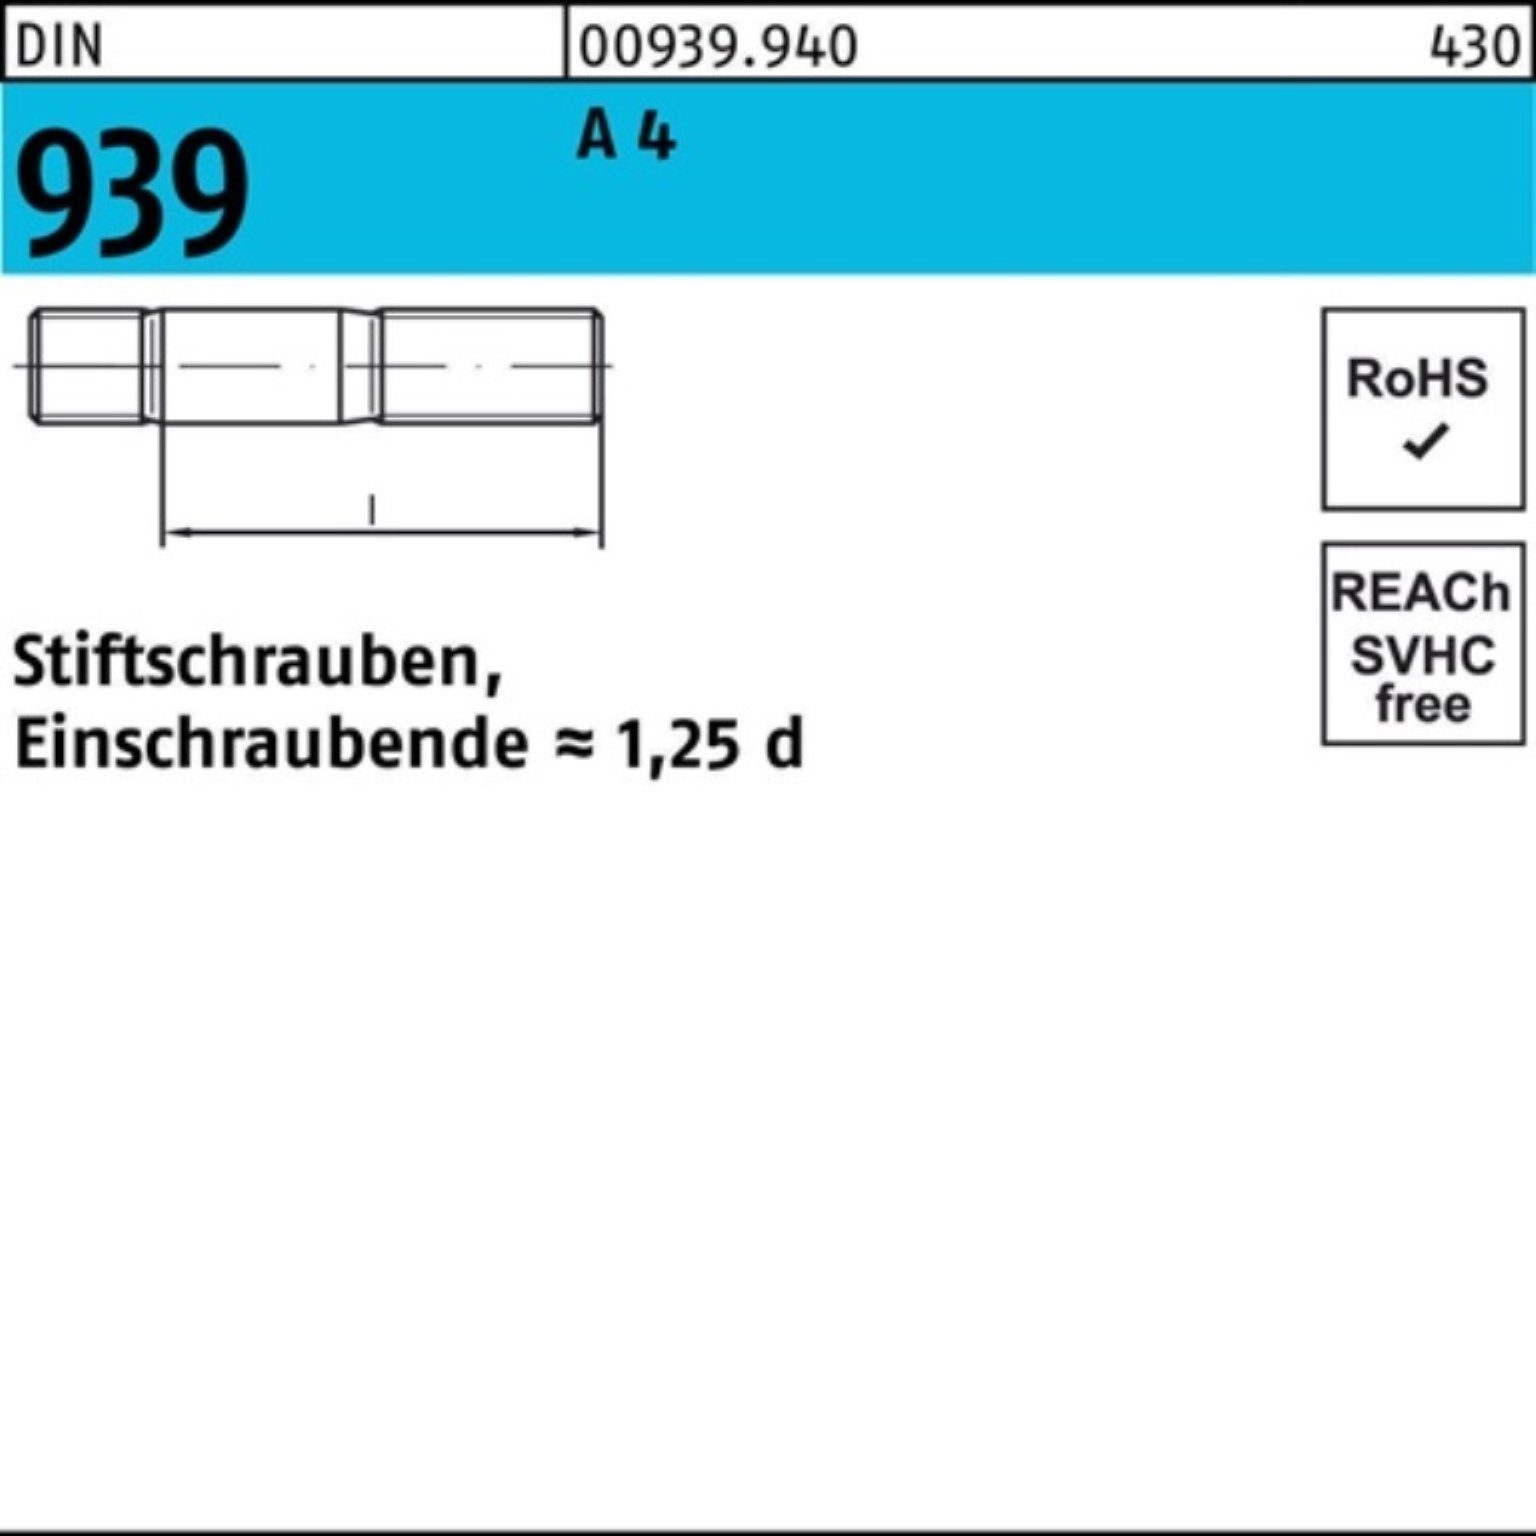 S Stiftschraube 939 4 A M16x 120 Stiftschraube Einschraubende=1,25d Pack DIN 1 Reyher 100er